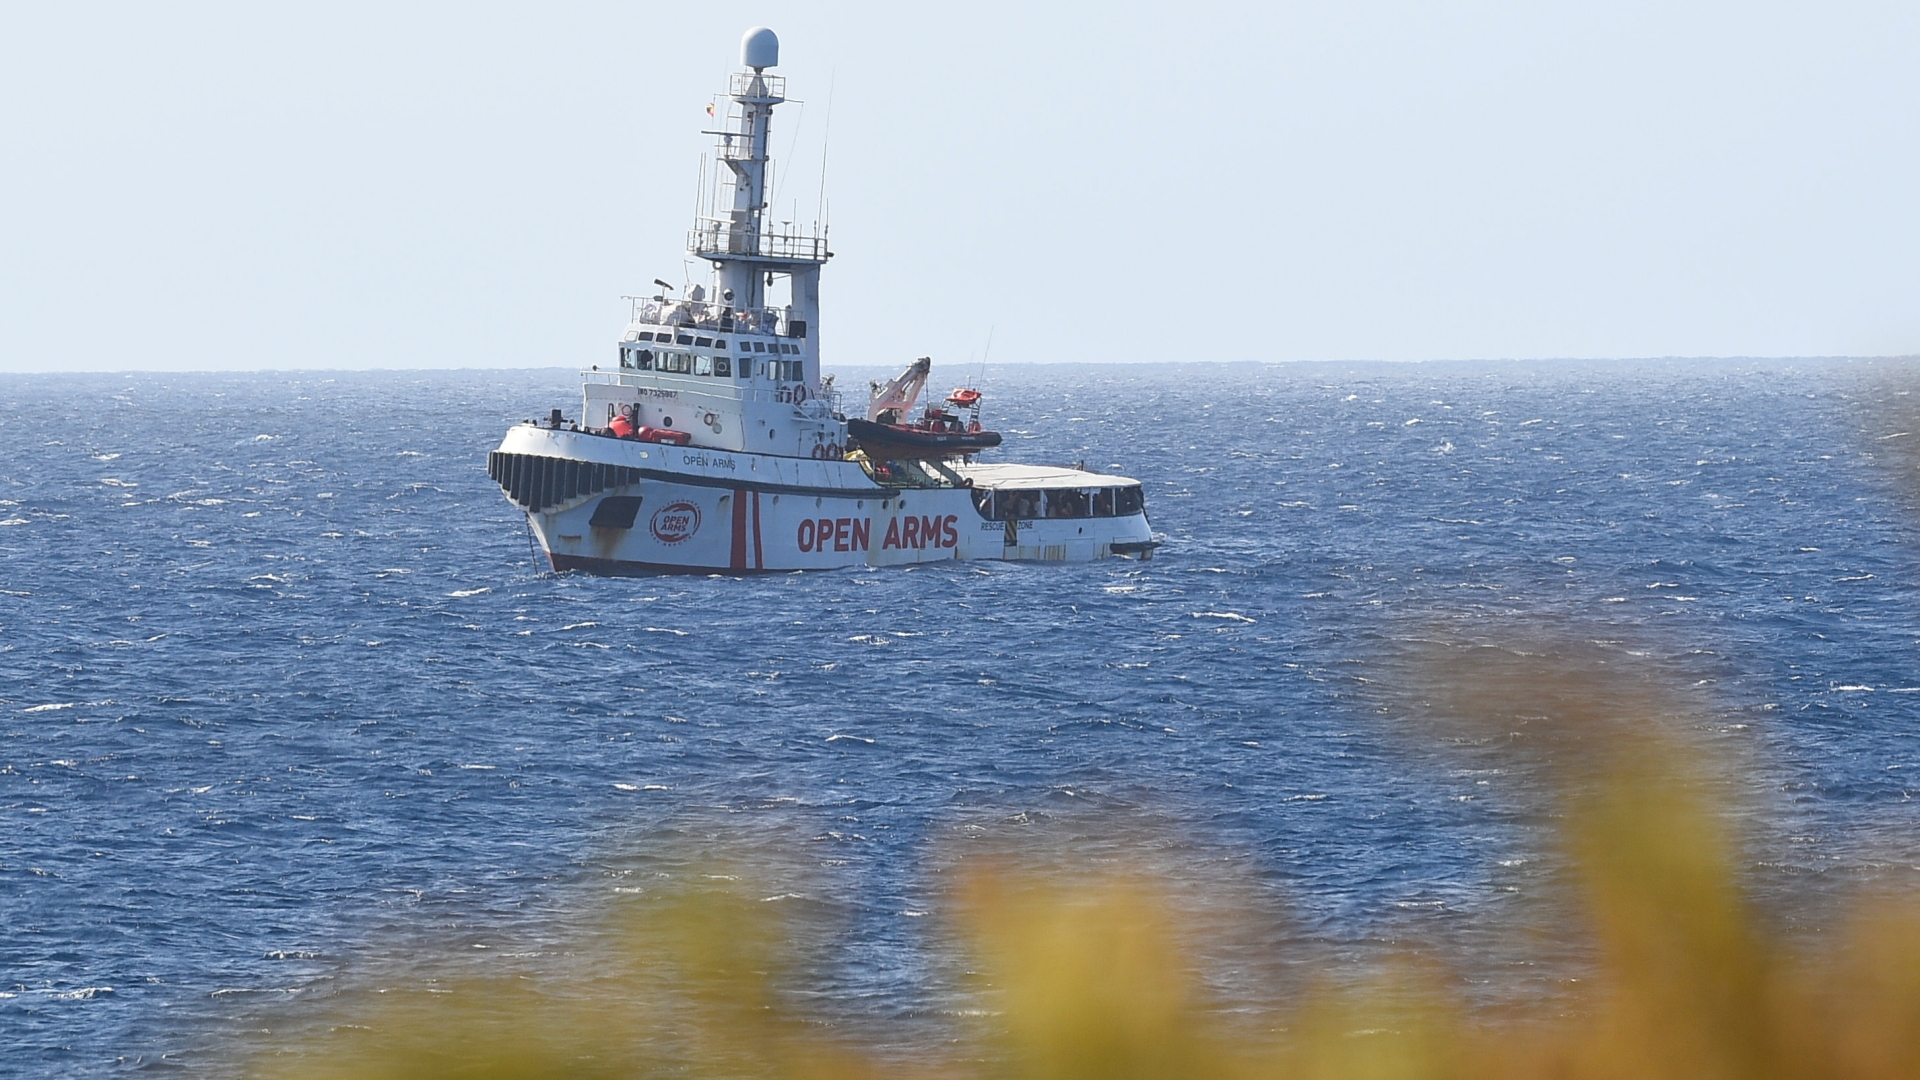 Das Rettungsschiff "Open Arms" vor der Küste Lampedusas